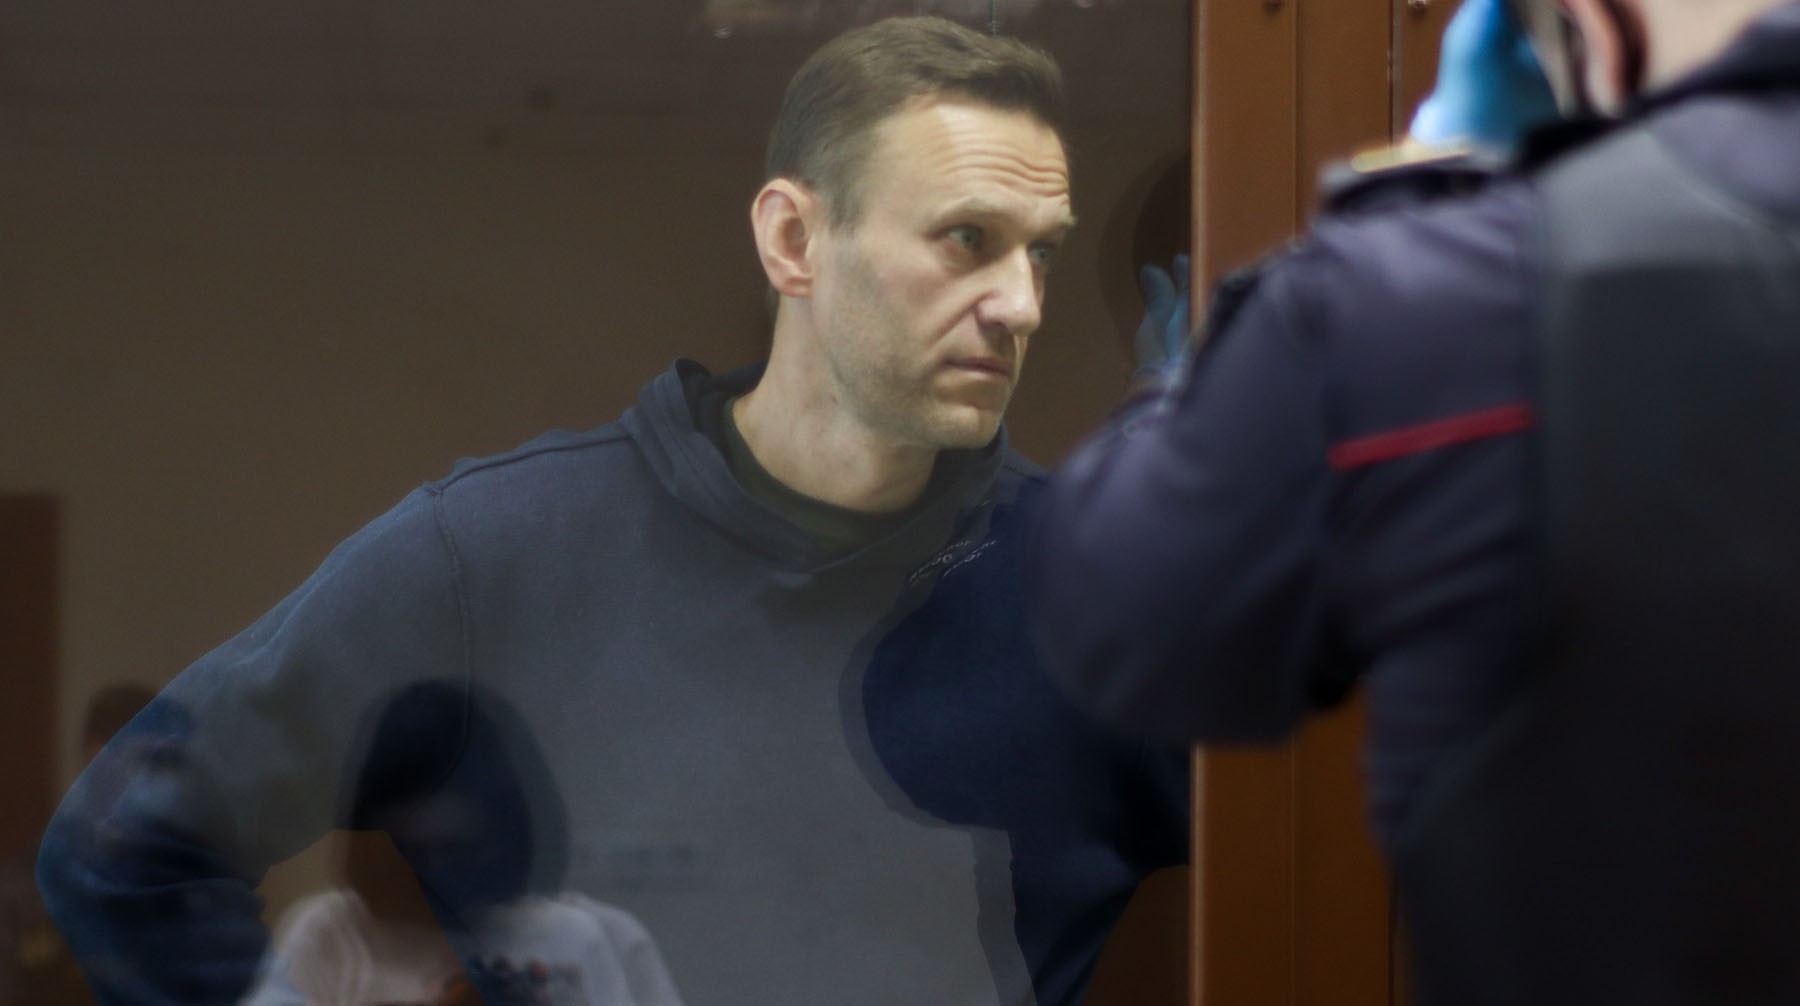 Dailystorm - Два заседания в один день: адвокат Навального осталась в недоумении от решения суда